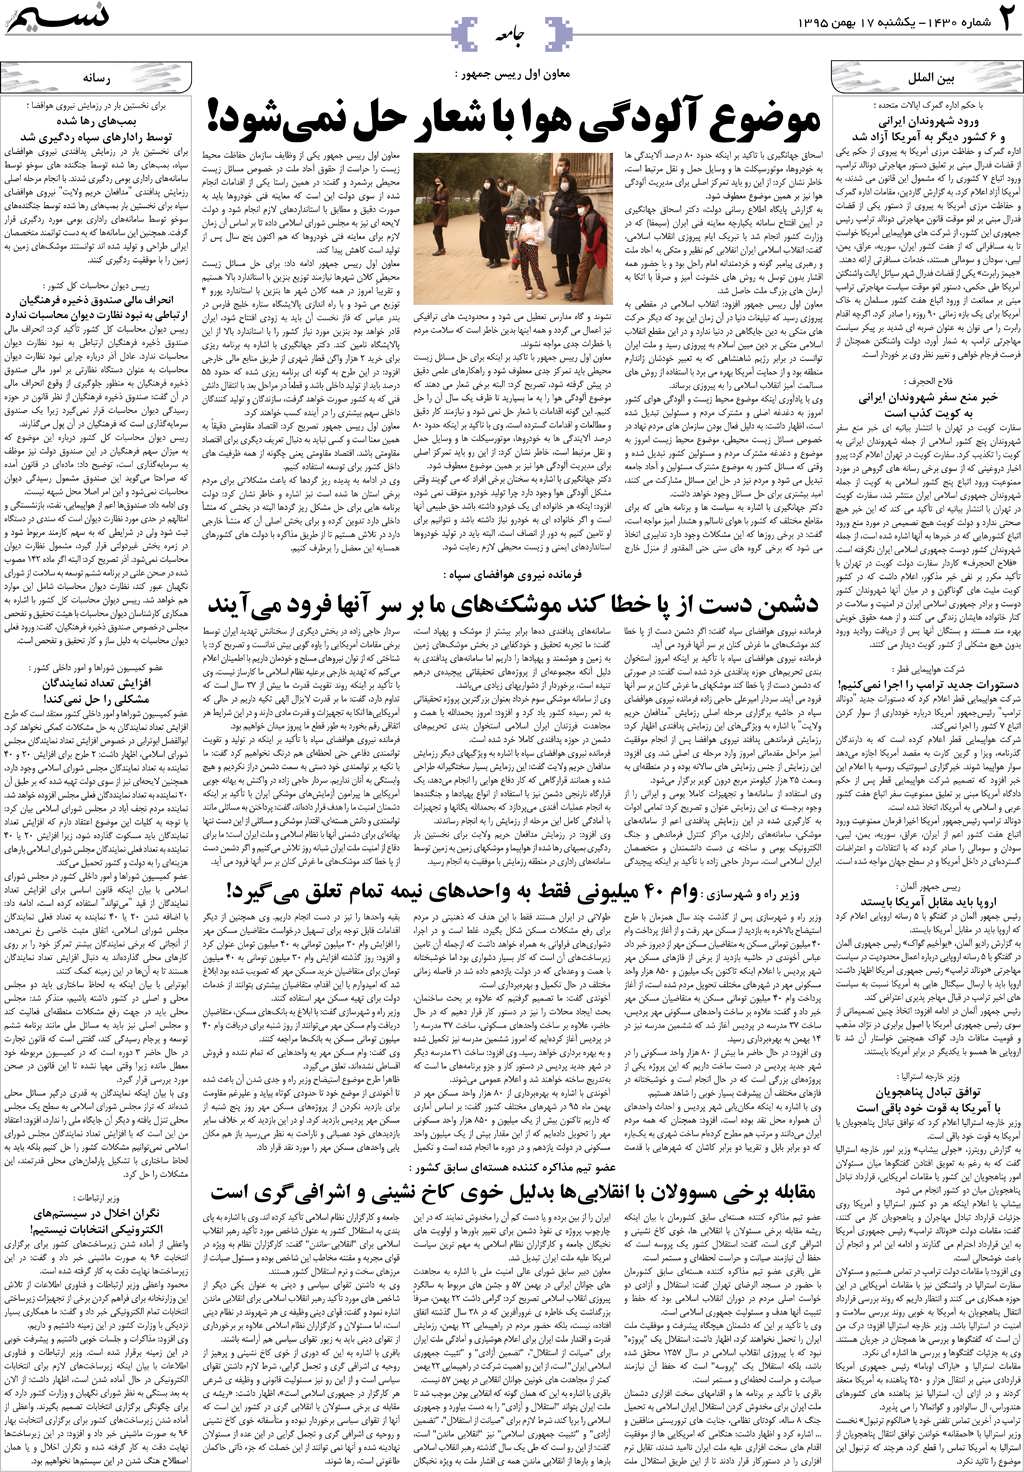 صفحه جامعه روزنامه نسیم شماره 1430